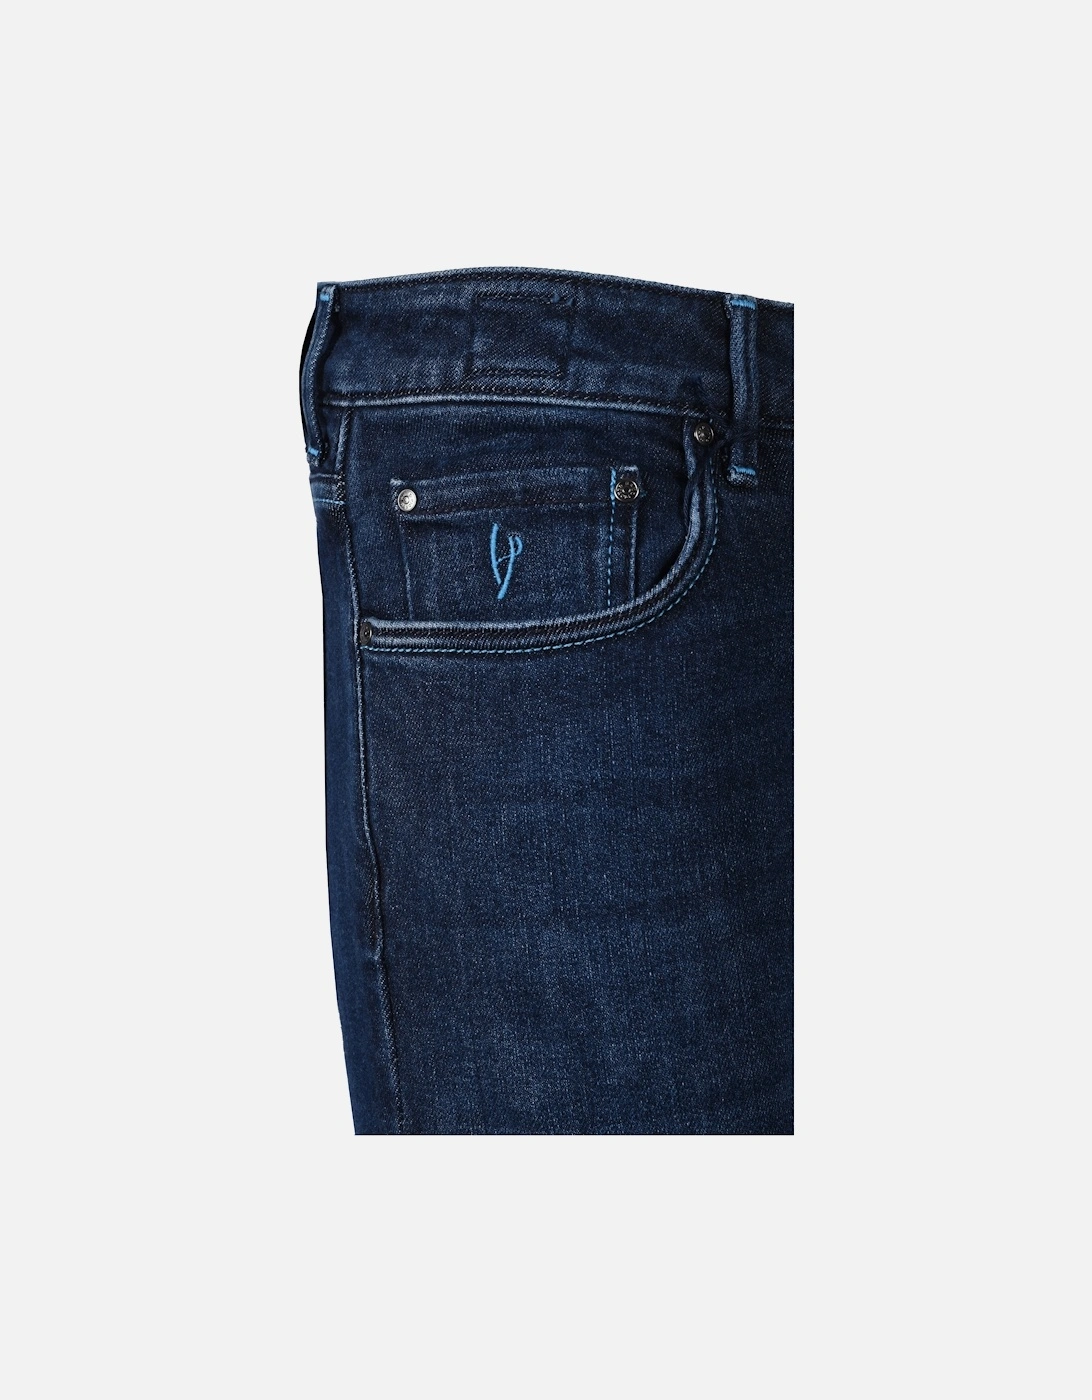 Handpicked Ravello Jeans Light Denim